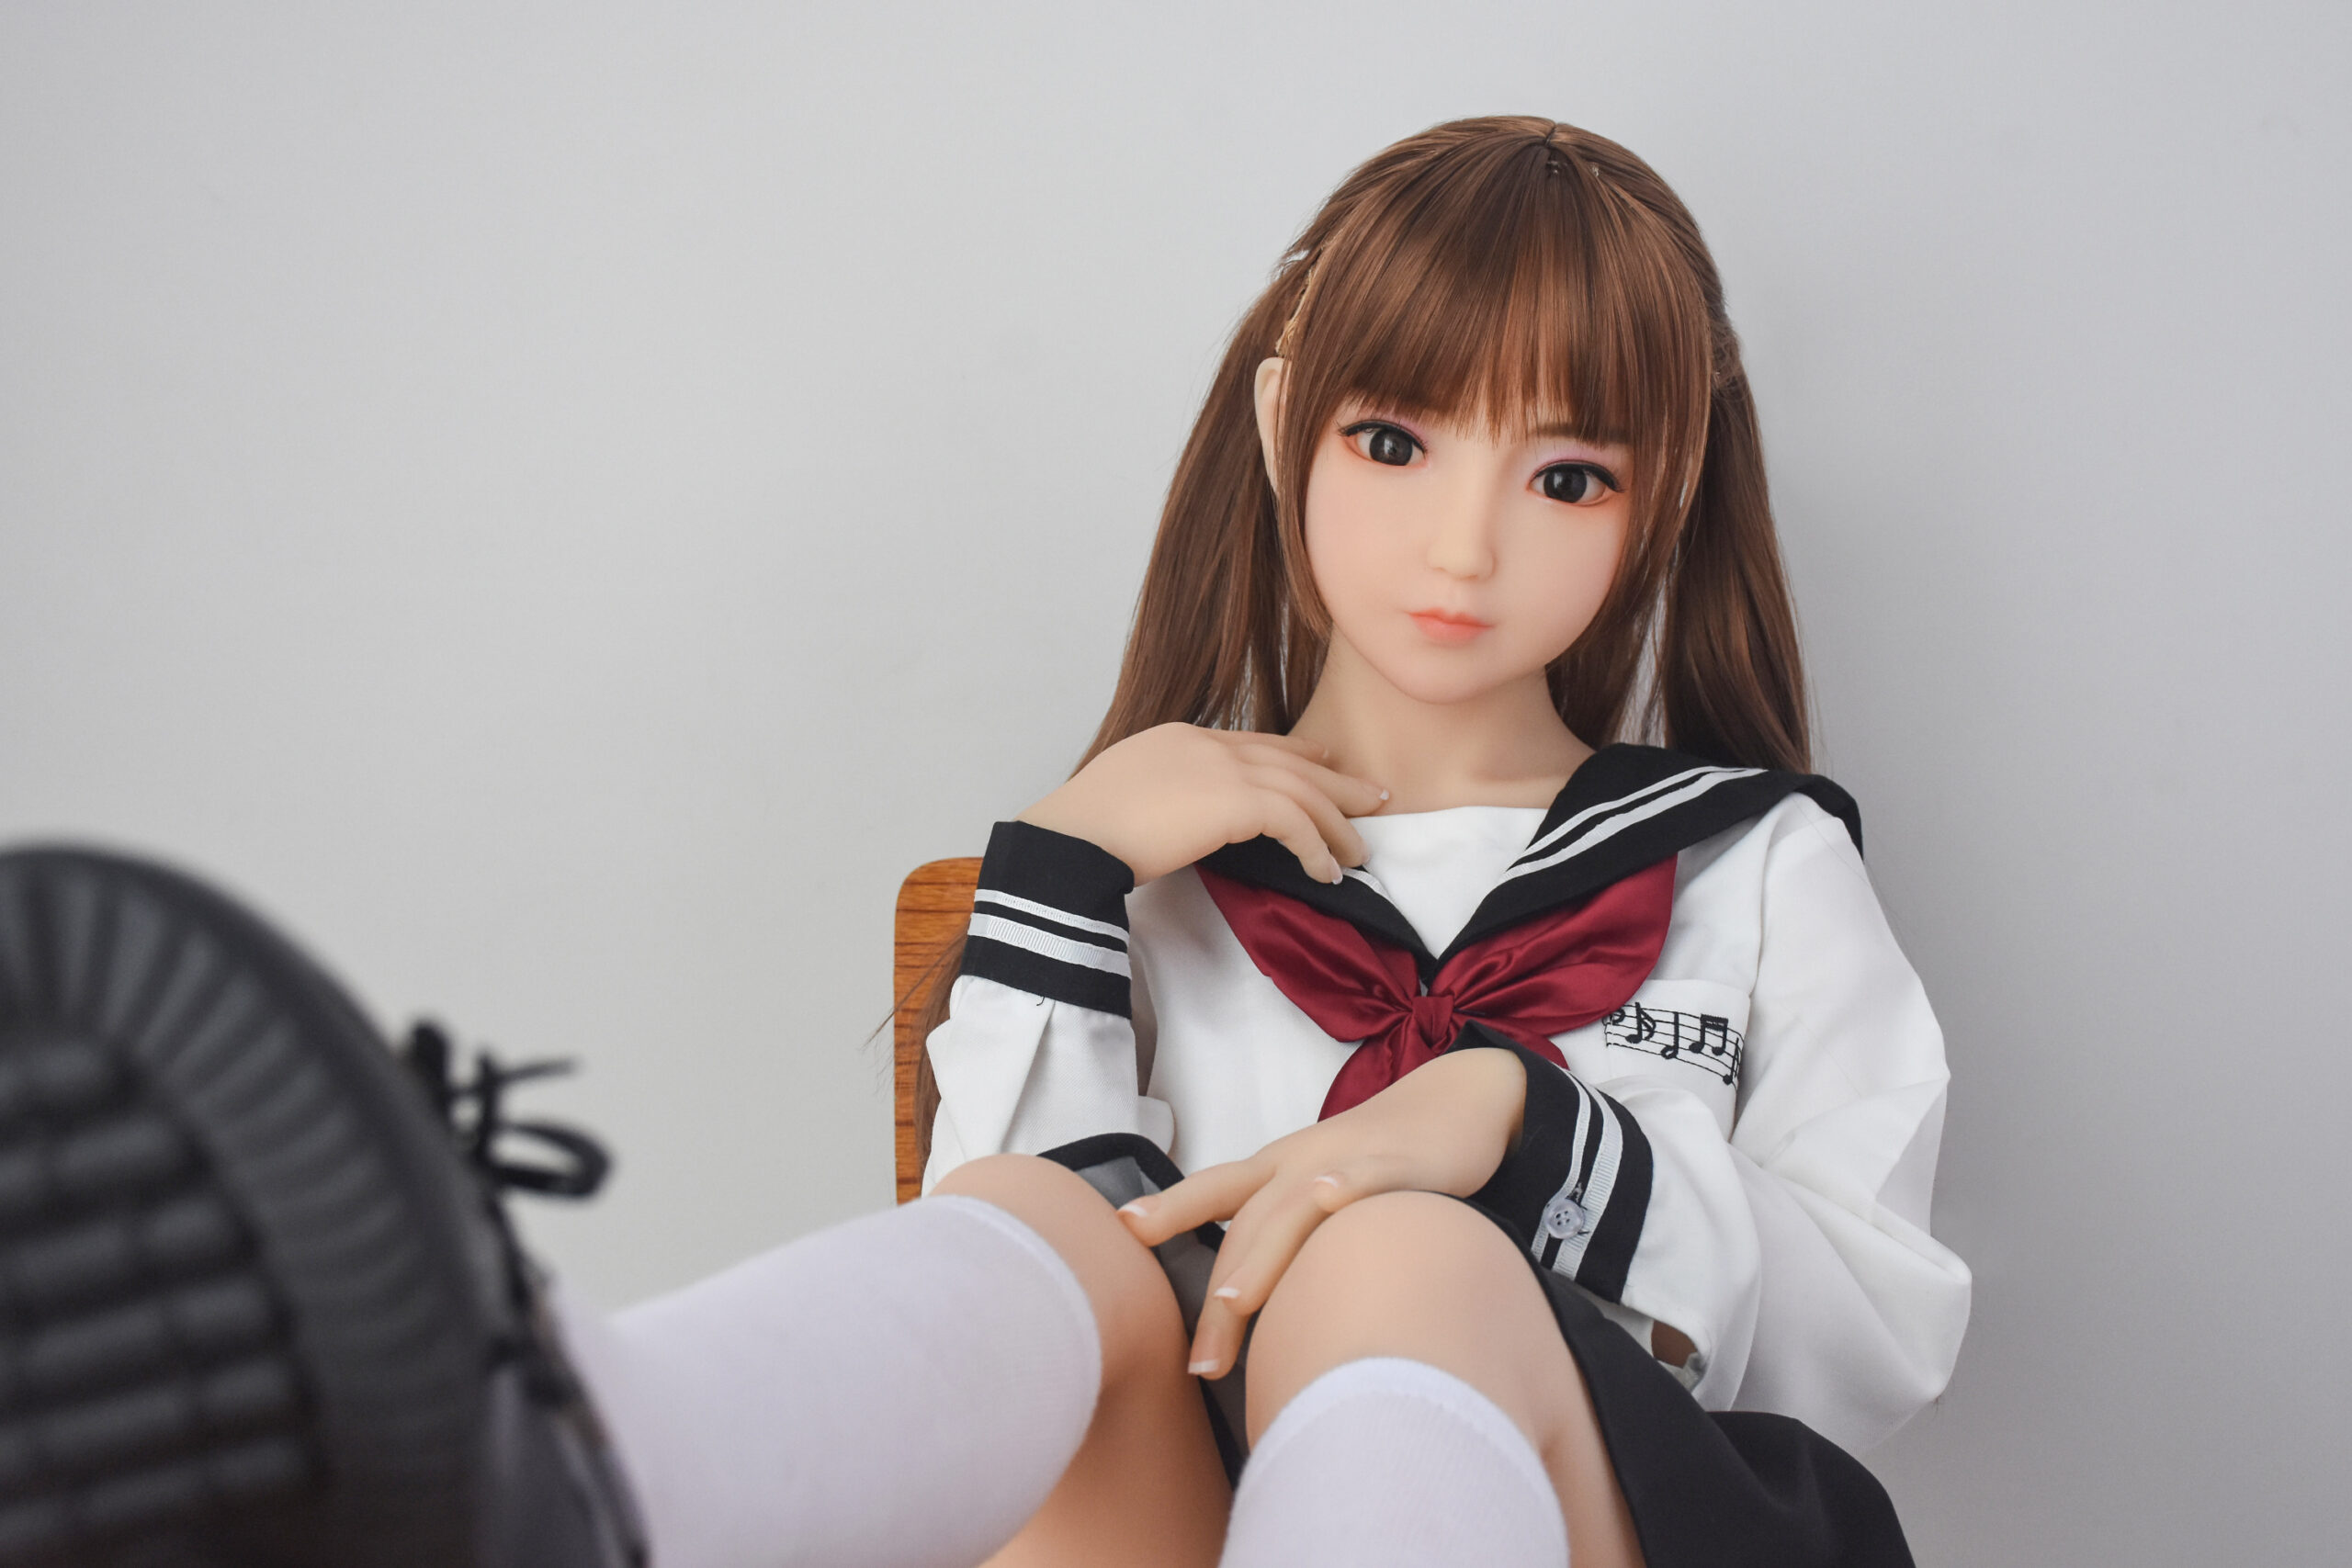 school girl looing teen sex doll